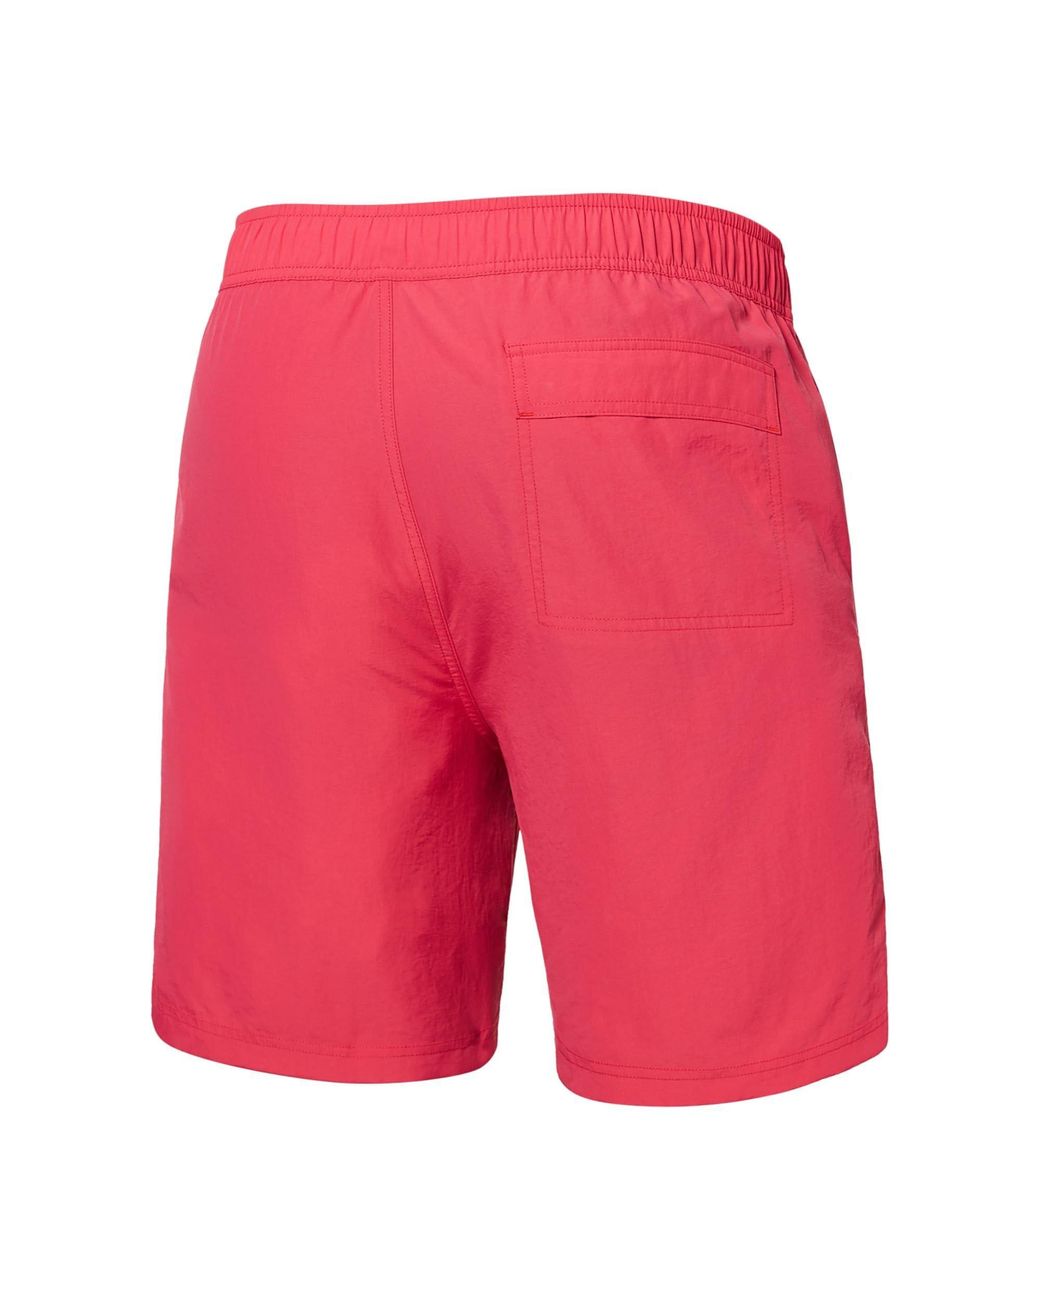 Saxx Underwear Co. Go Coastal 2-n-1 7 Short With Droptemp Hydro